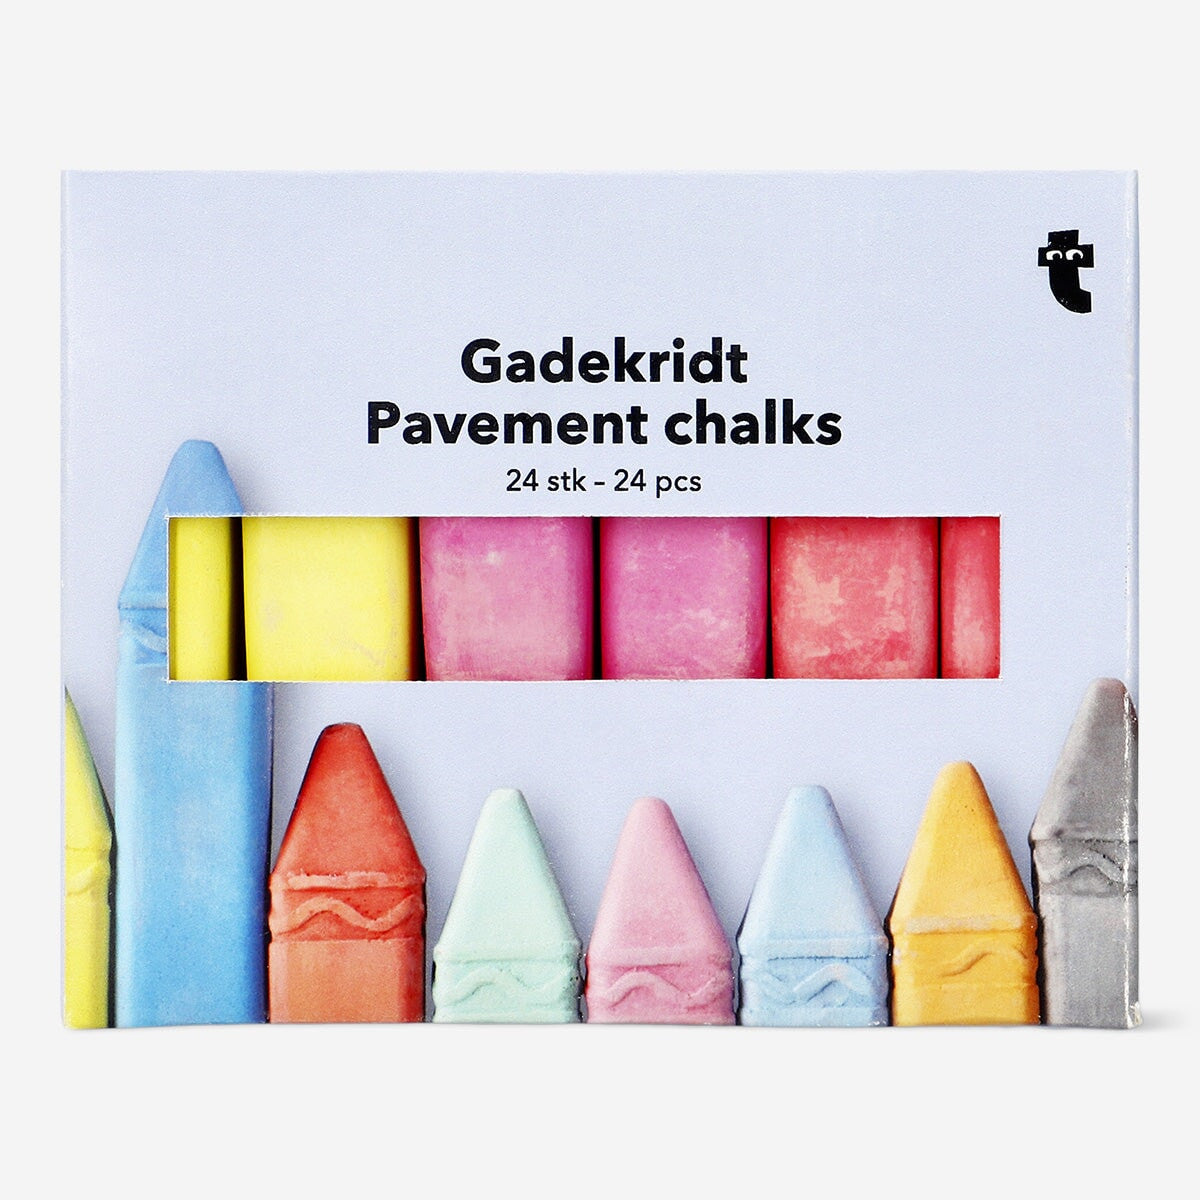 Image of Pavement chalks. 24 pcs